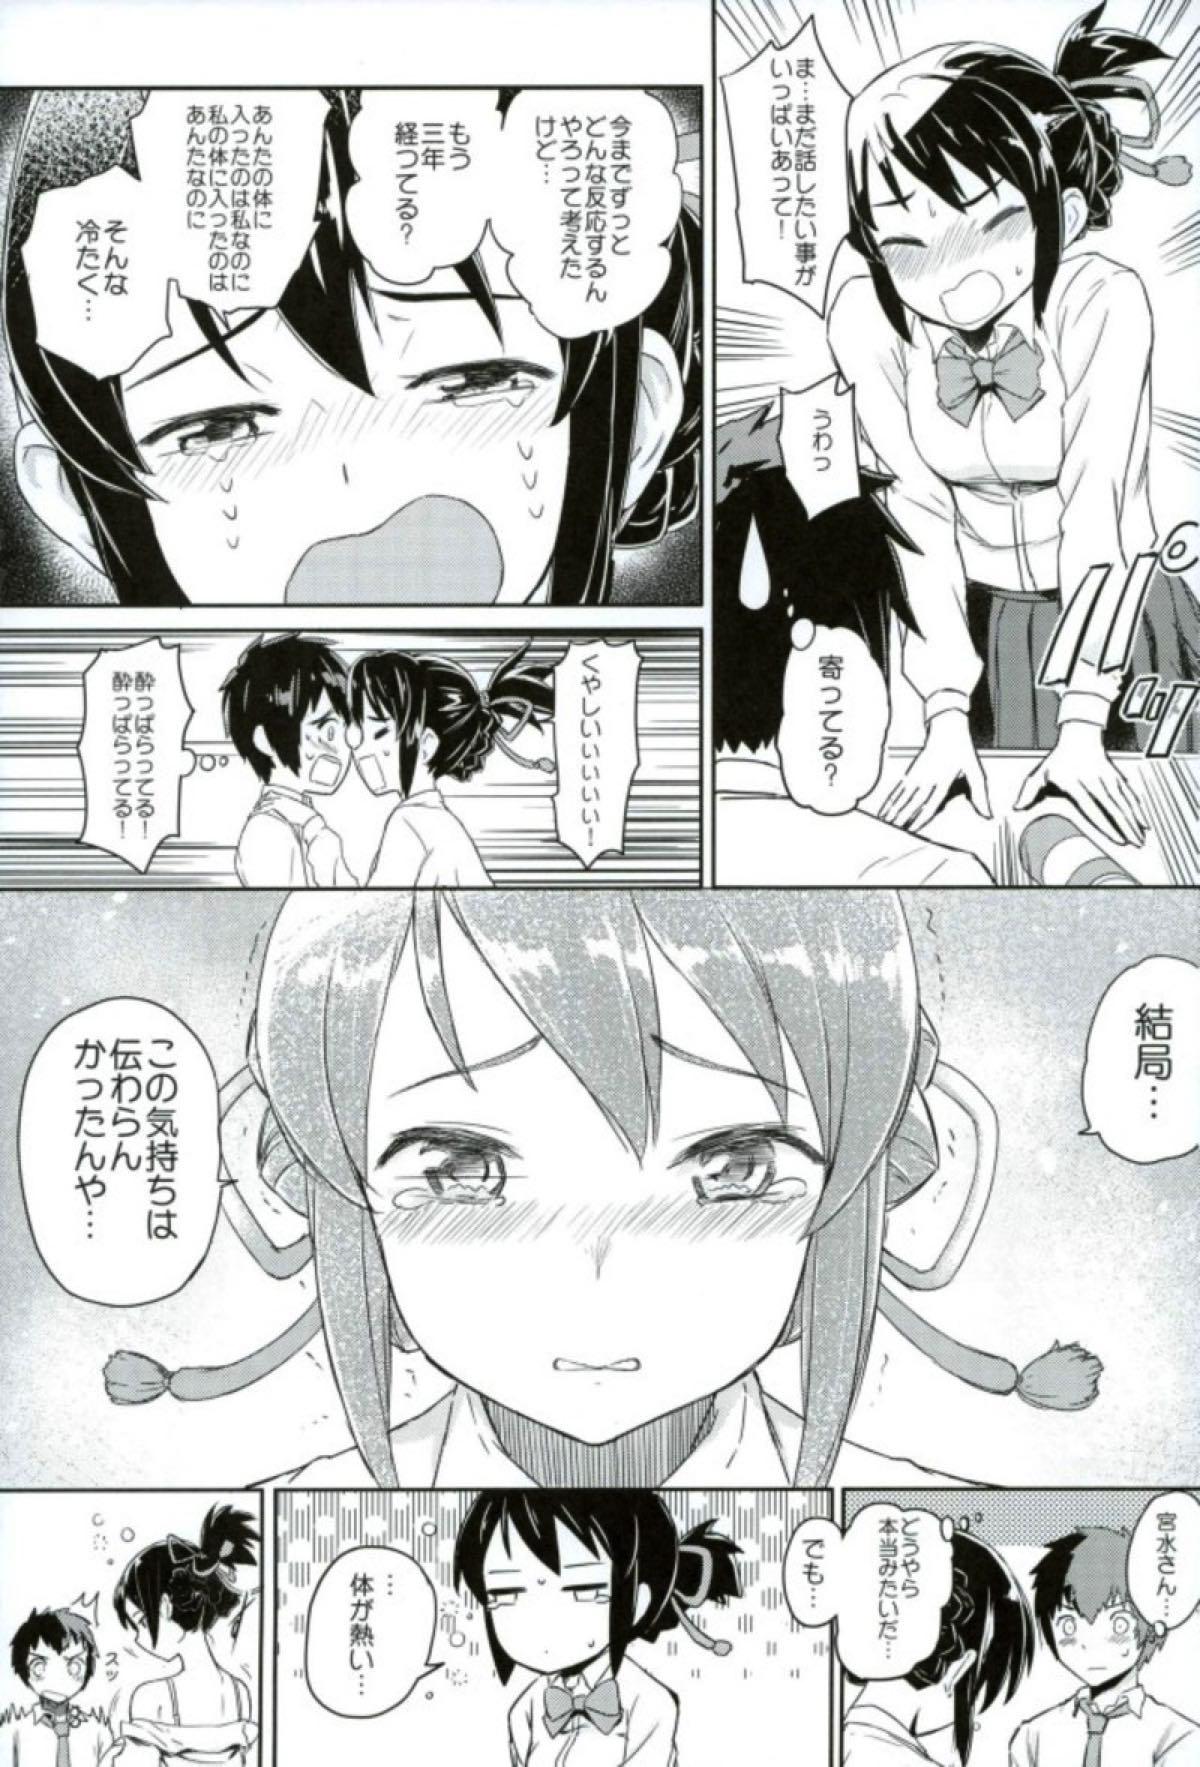 Piercings Kimi to Boku no Musubi - Kimi no na wa. Nena - Page 4